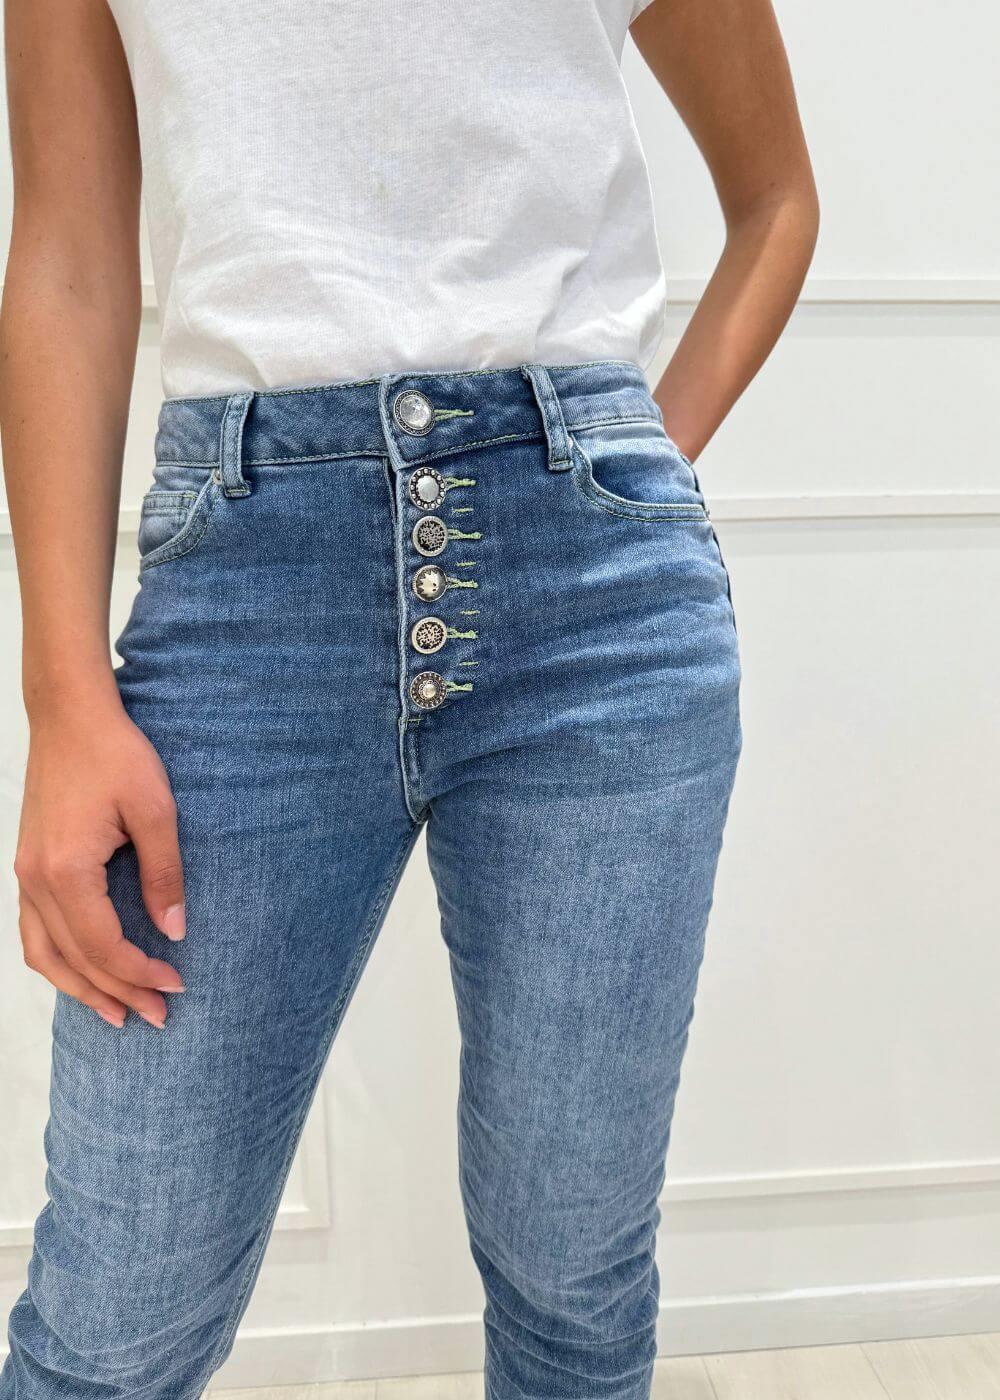 KERSO - Jeans Multi Bottoni - DENIM